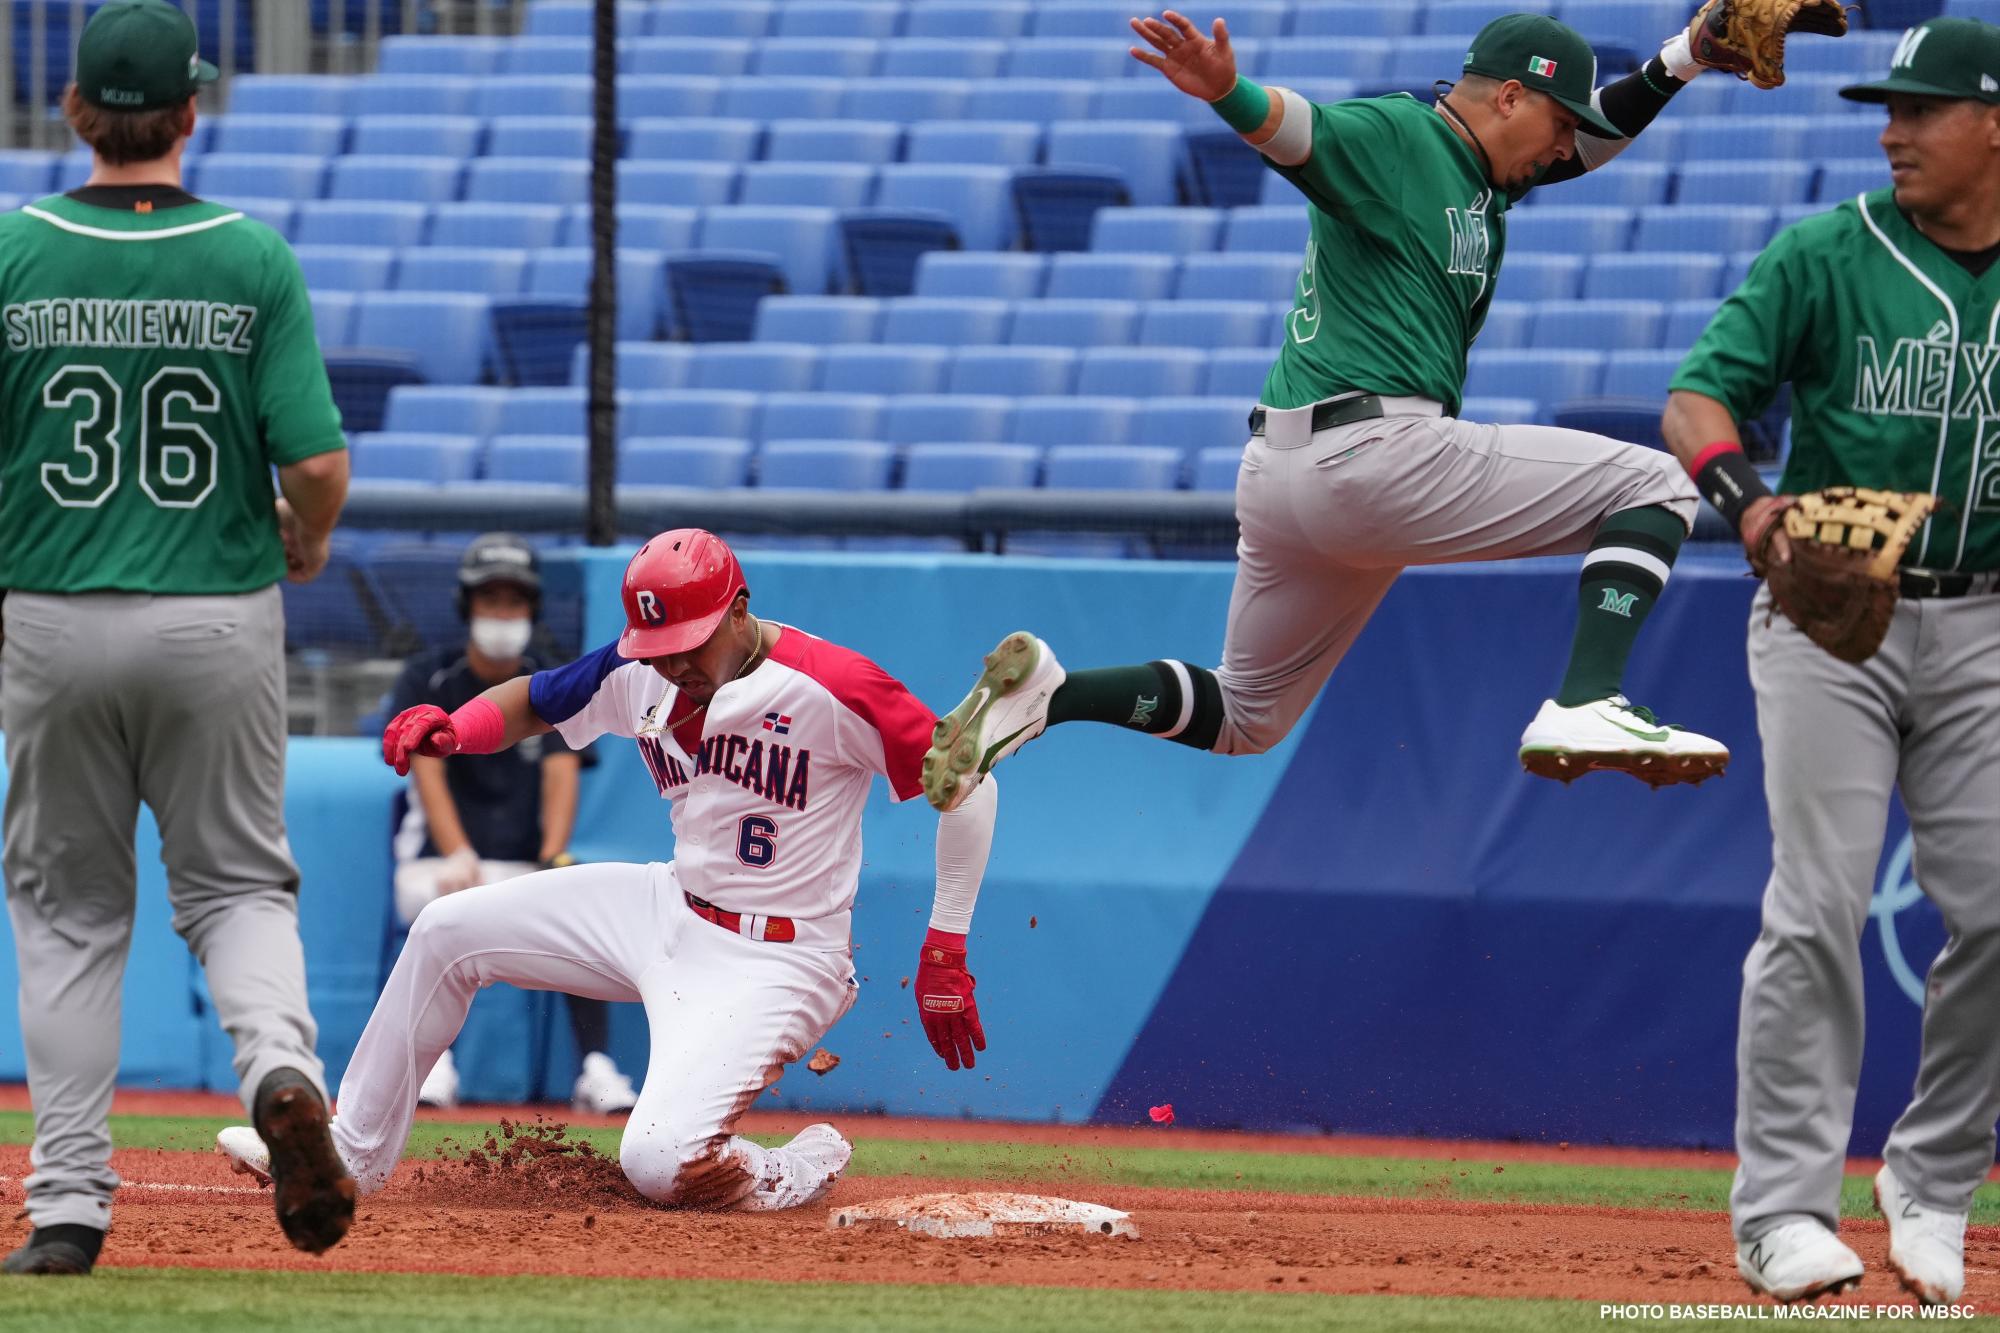 $!En duelo de lanzadores, México cae ante Dominicana en su presentación en Tokio 2020